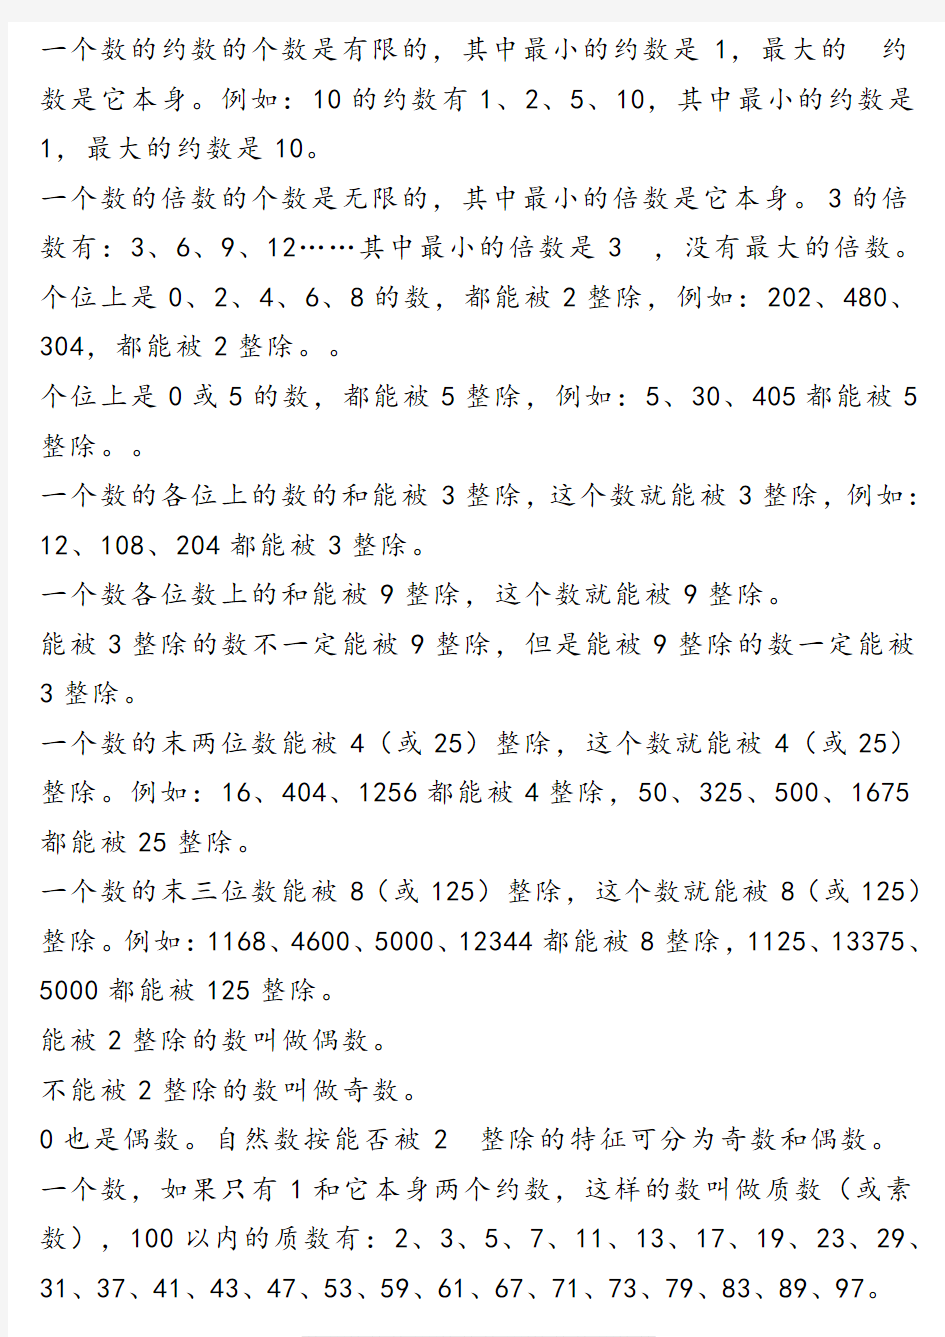 上海小学数学知识点总结